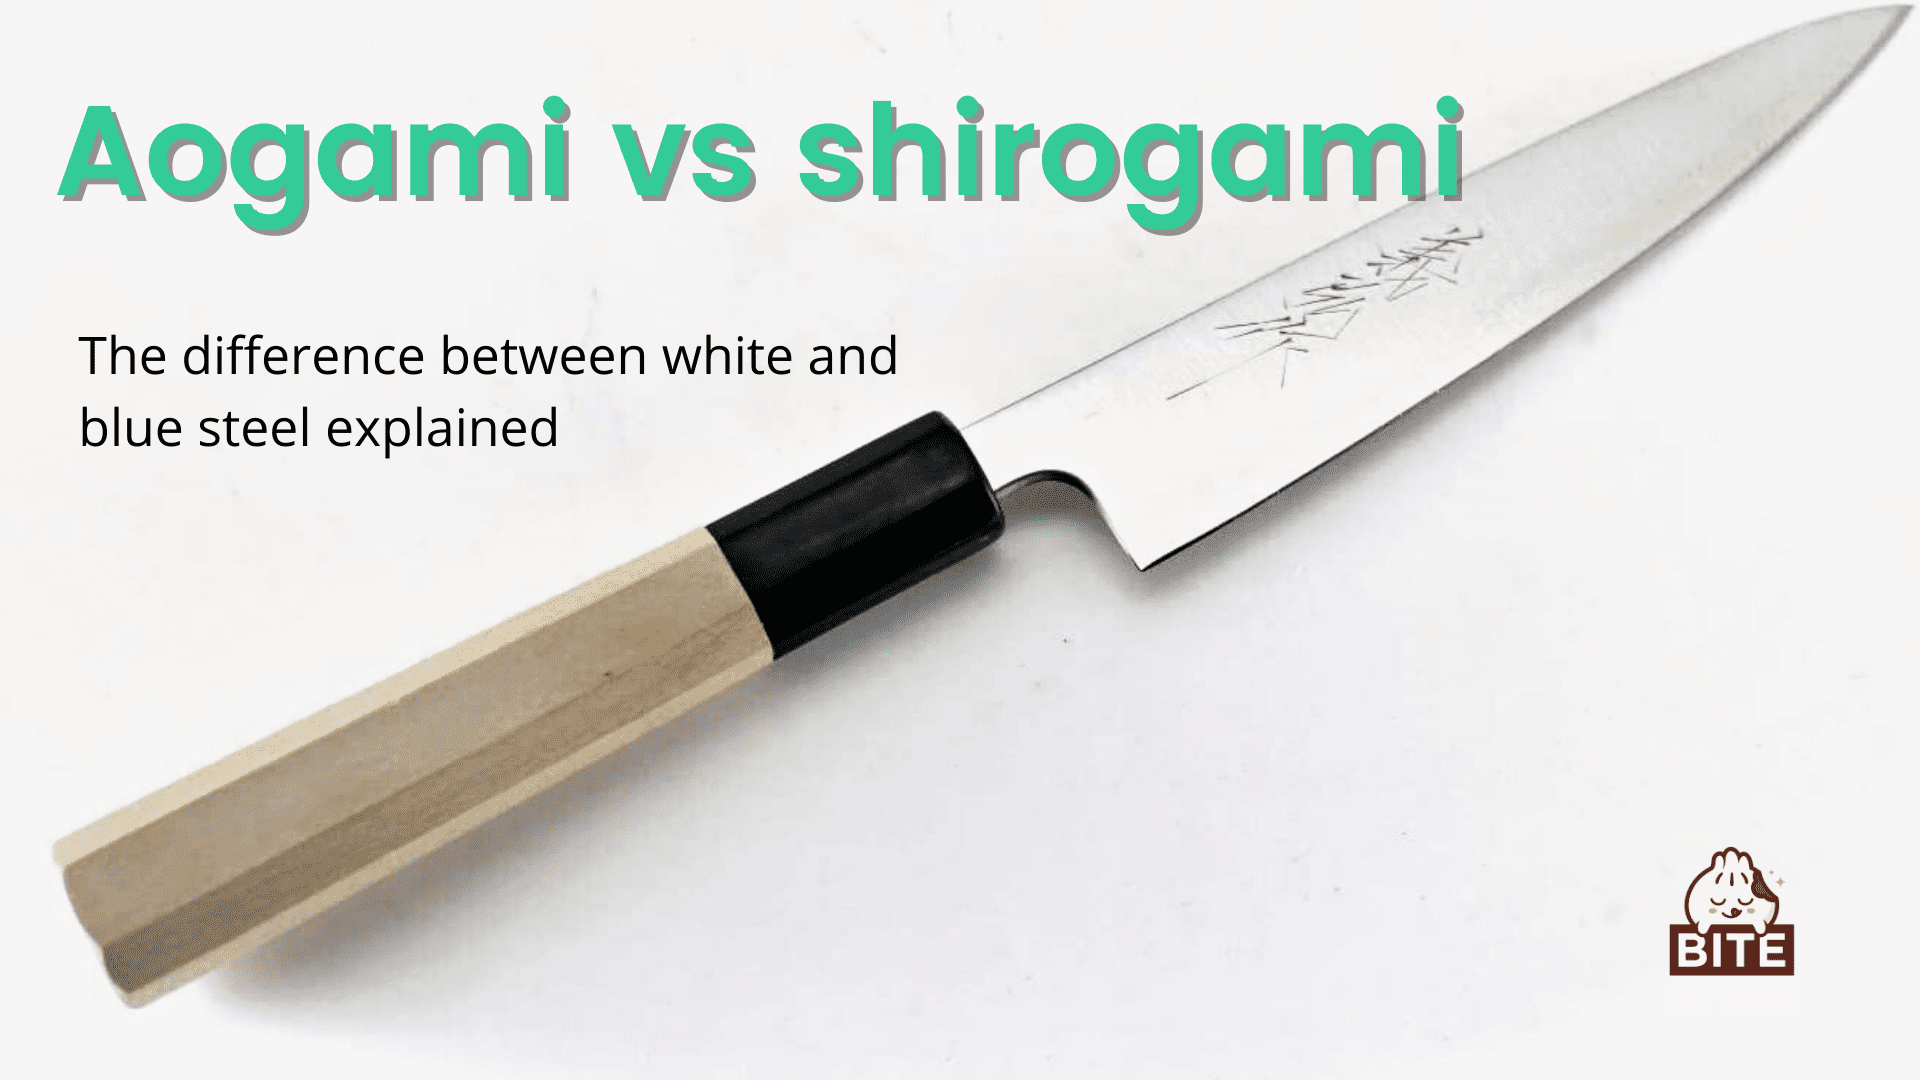 Aogami contra shirogami | Explicación de la diferencia entre acero blanco y azul.